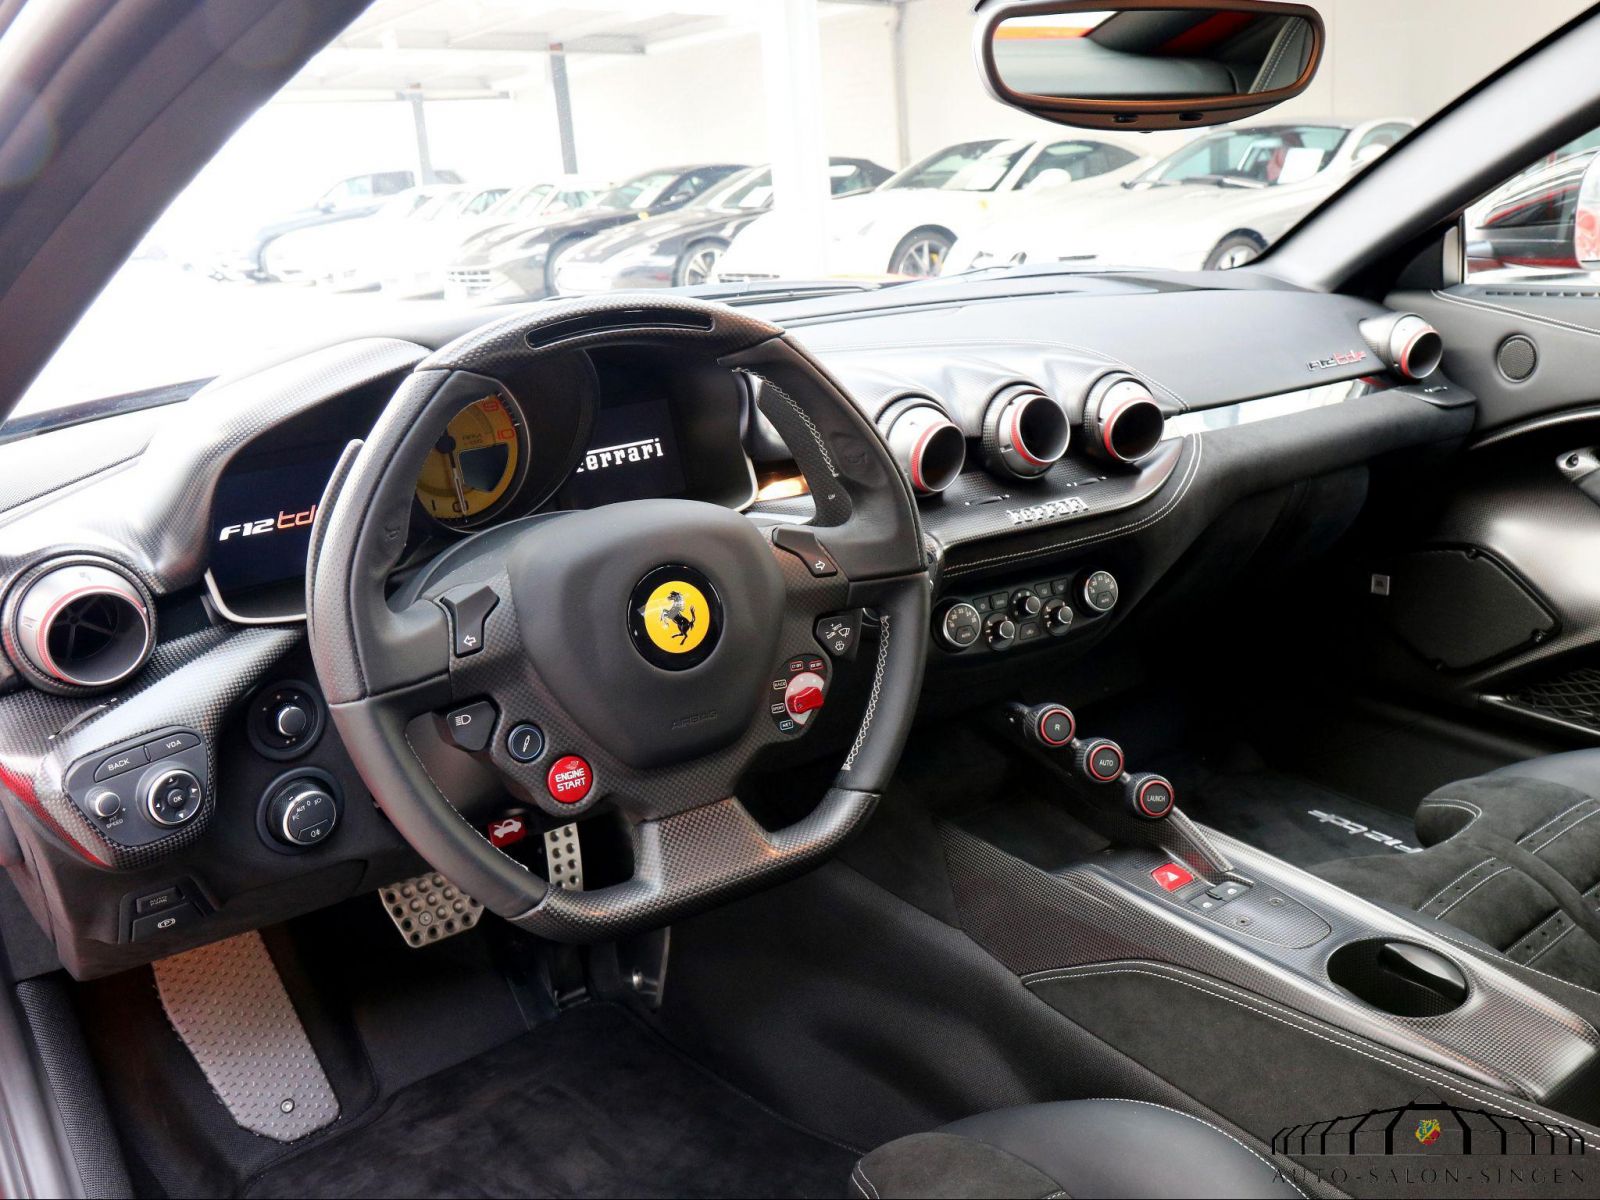 Ferrari F12 Tdf Coupe Auto Salon Singen